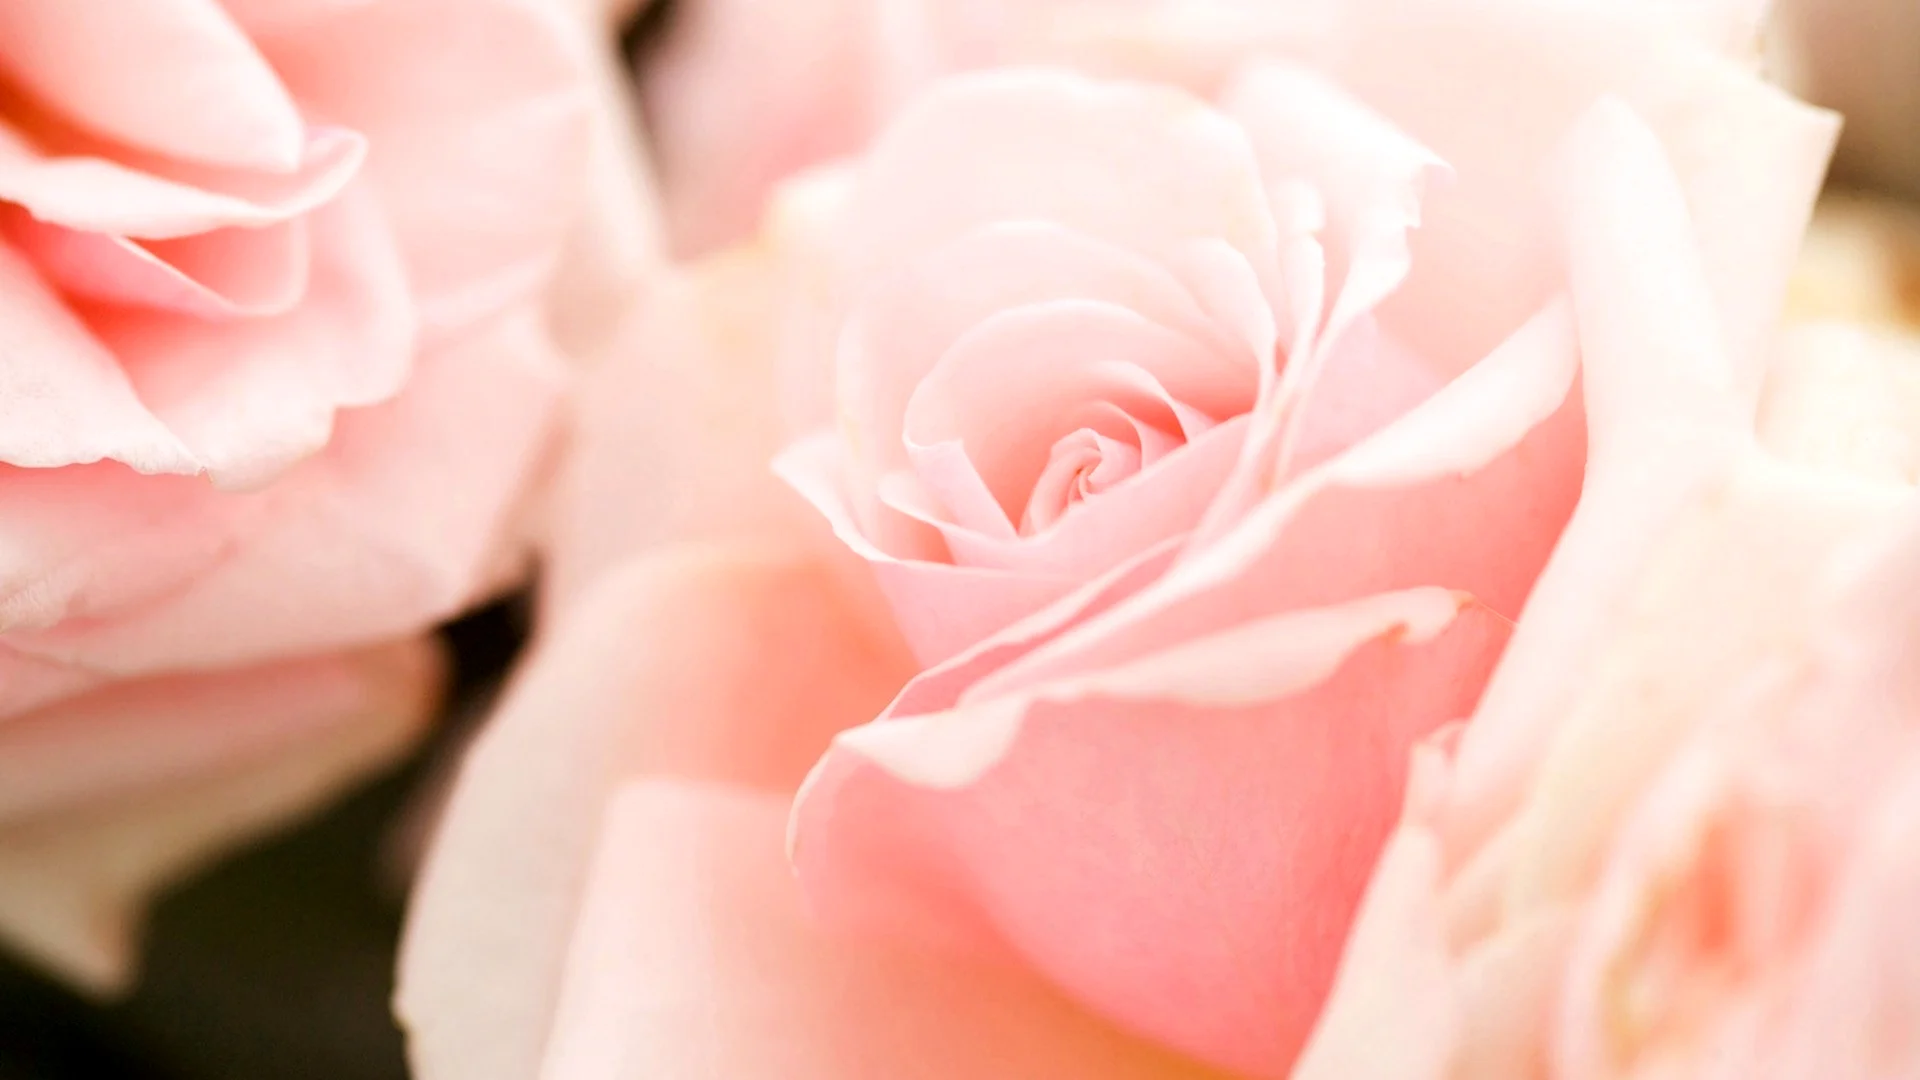 Бледно розовые розы